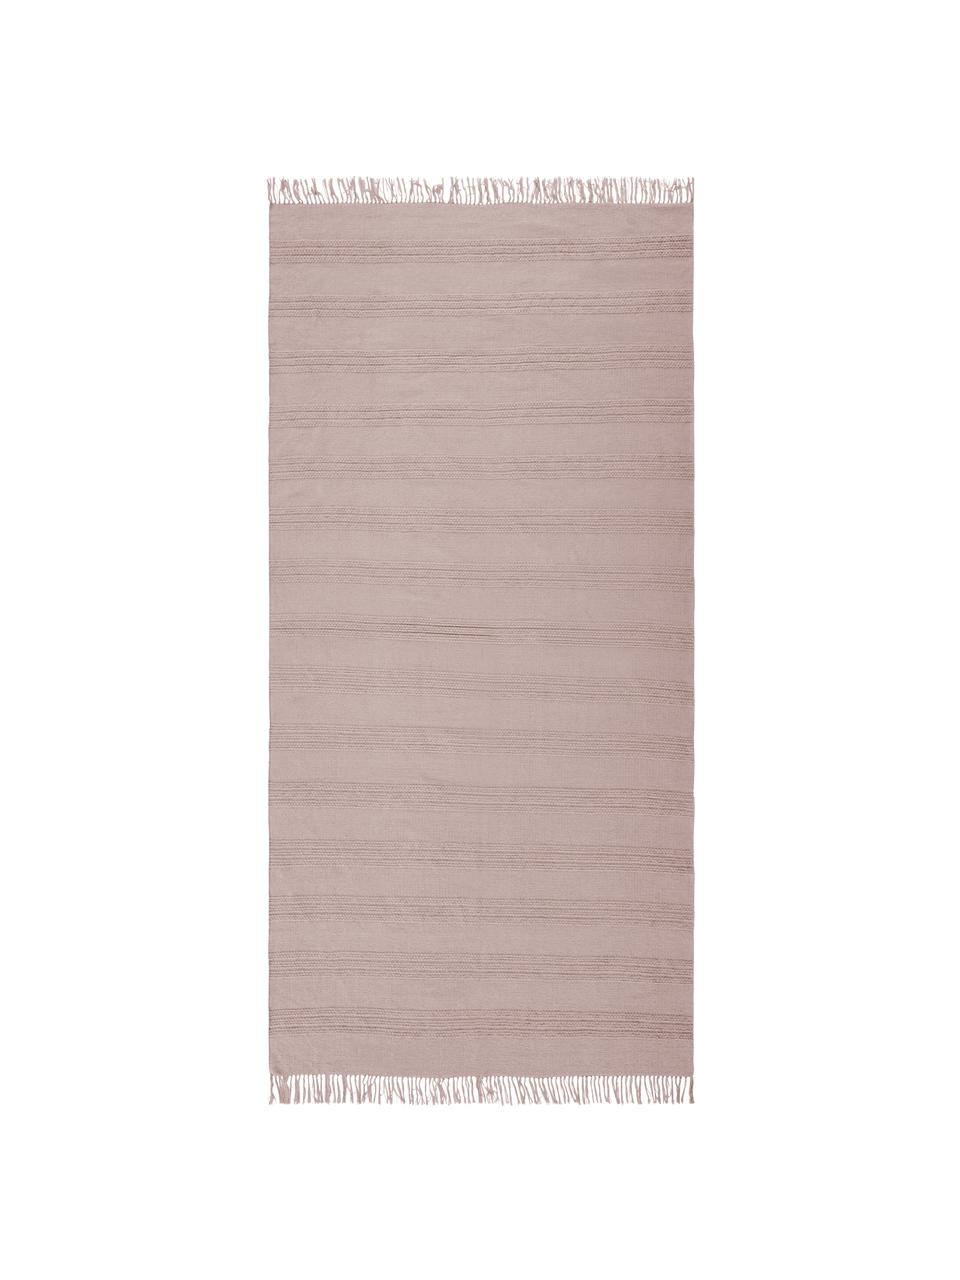 Baumwollteppich Tanya mit Ton-in-Ton-Webstreifenstruktur und Fransenabschluss, 100% Baumwolle, Rosa, B 200 x L 300 cm (Größe L)